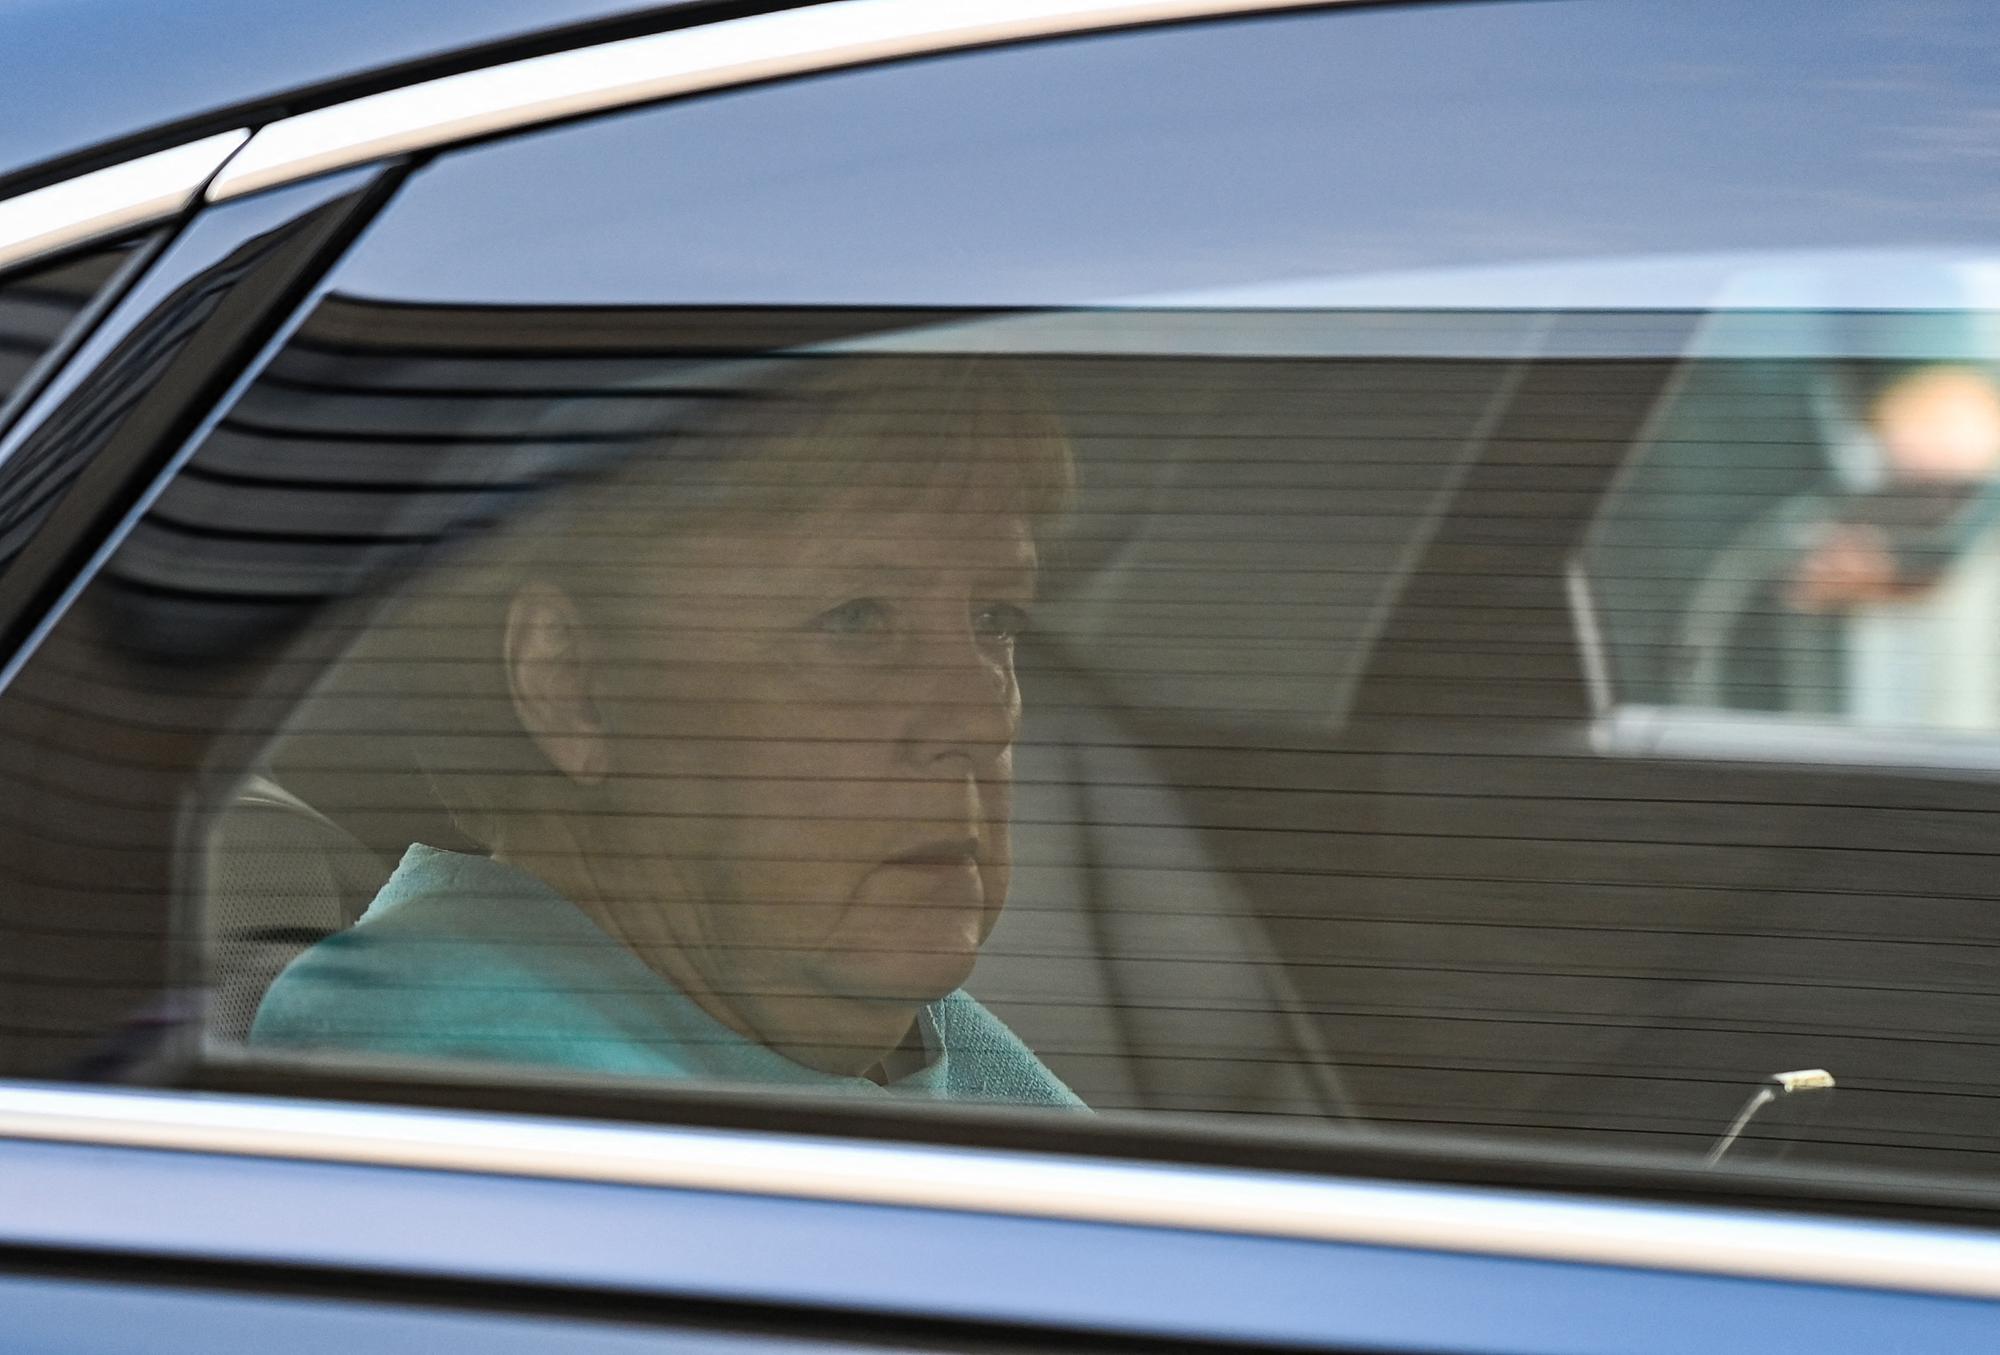 Angela Merkel à son arrivée à la fête électorale de son parti, la CDU, à Berlin. [AFP - Ina Fassbender]